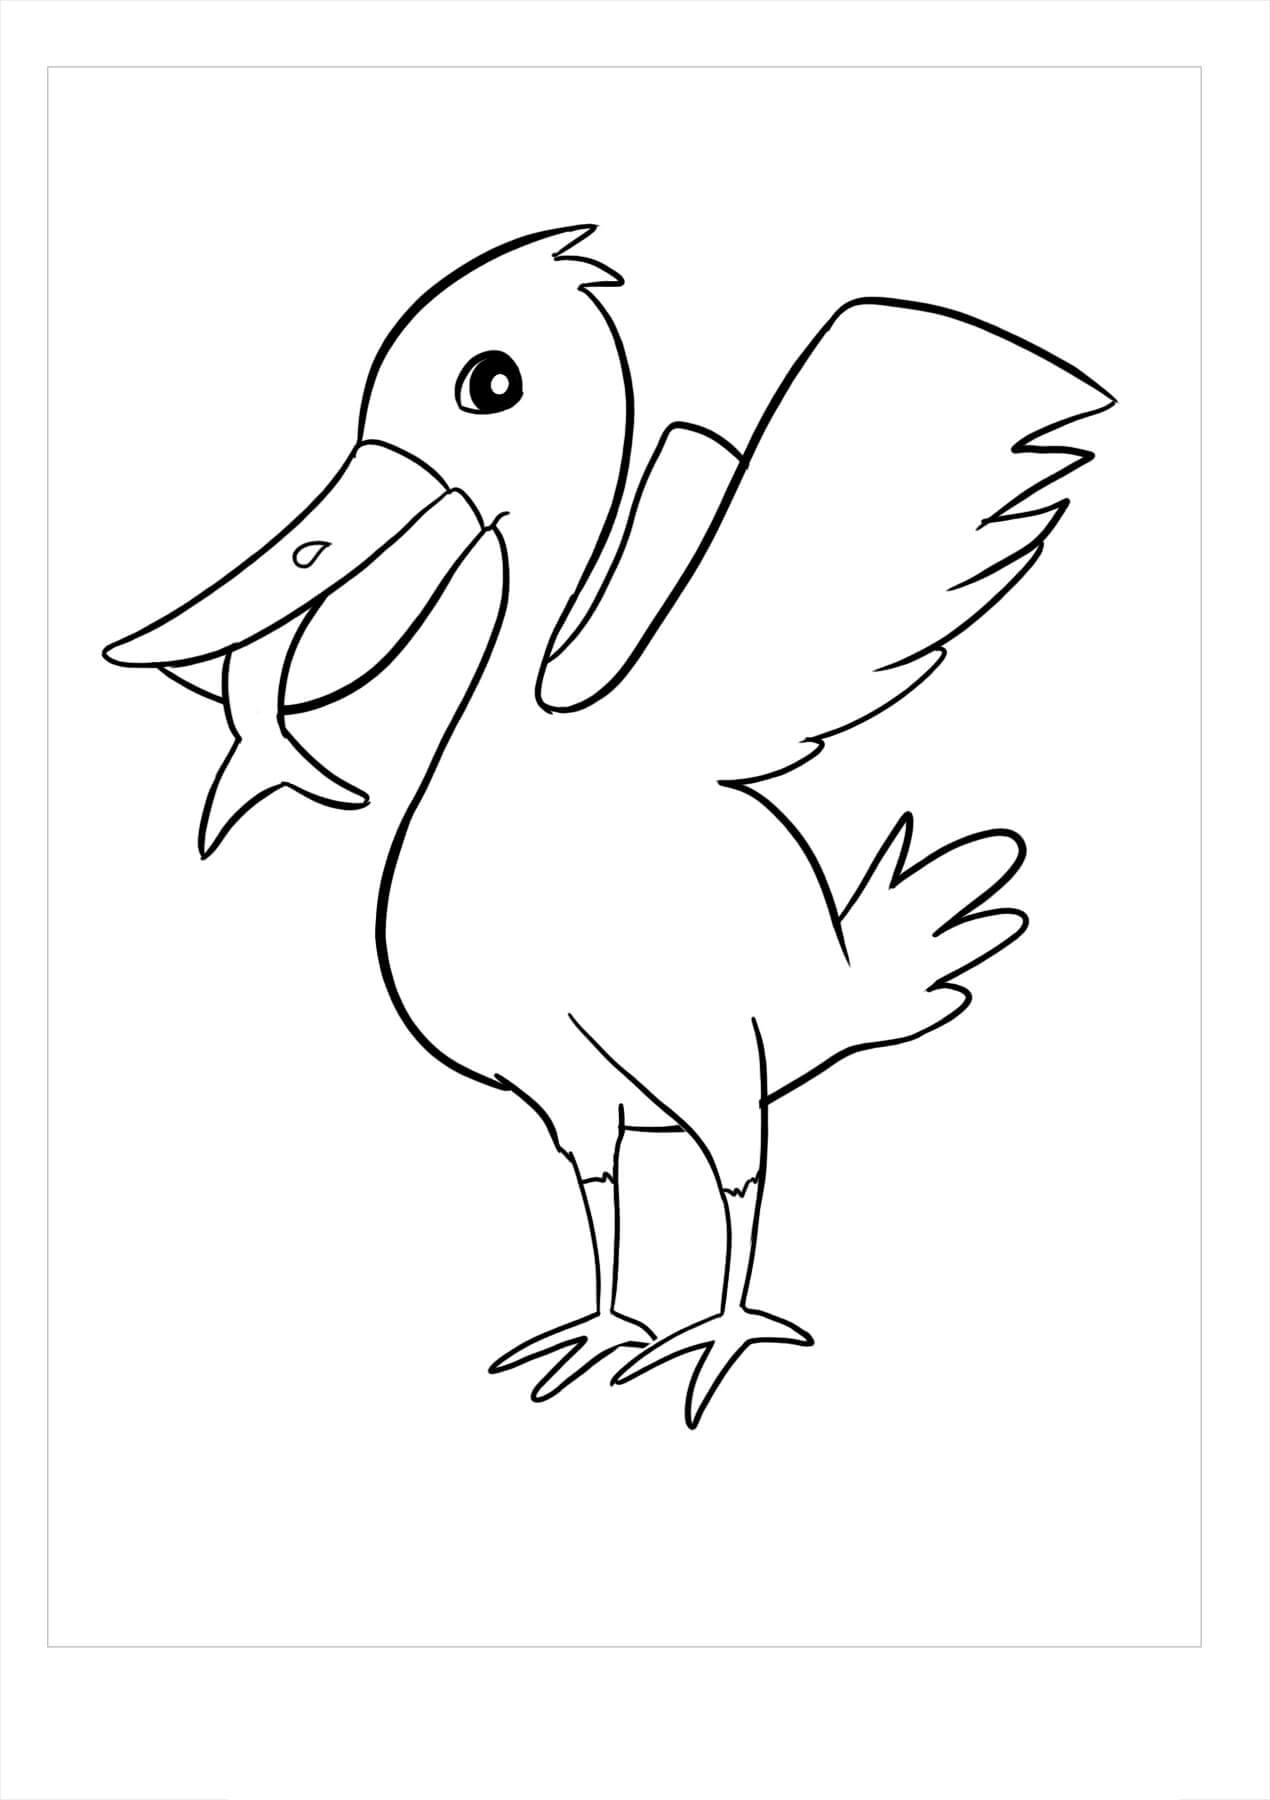 Pelicano Incrível para colorir